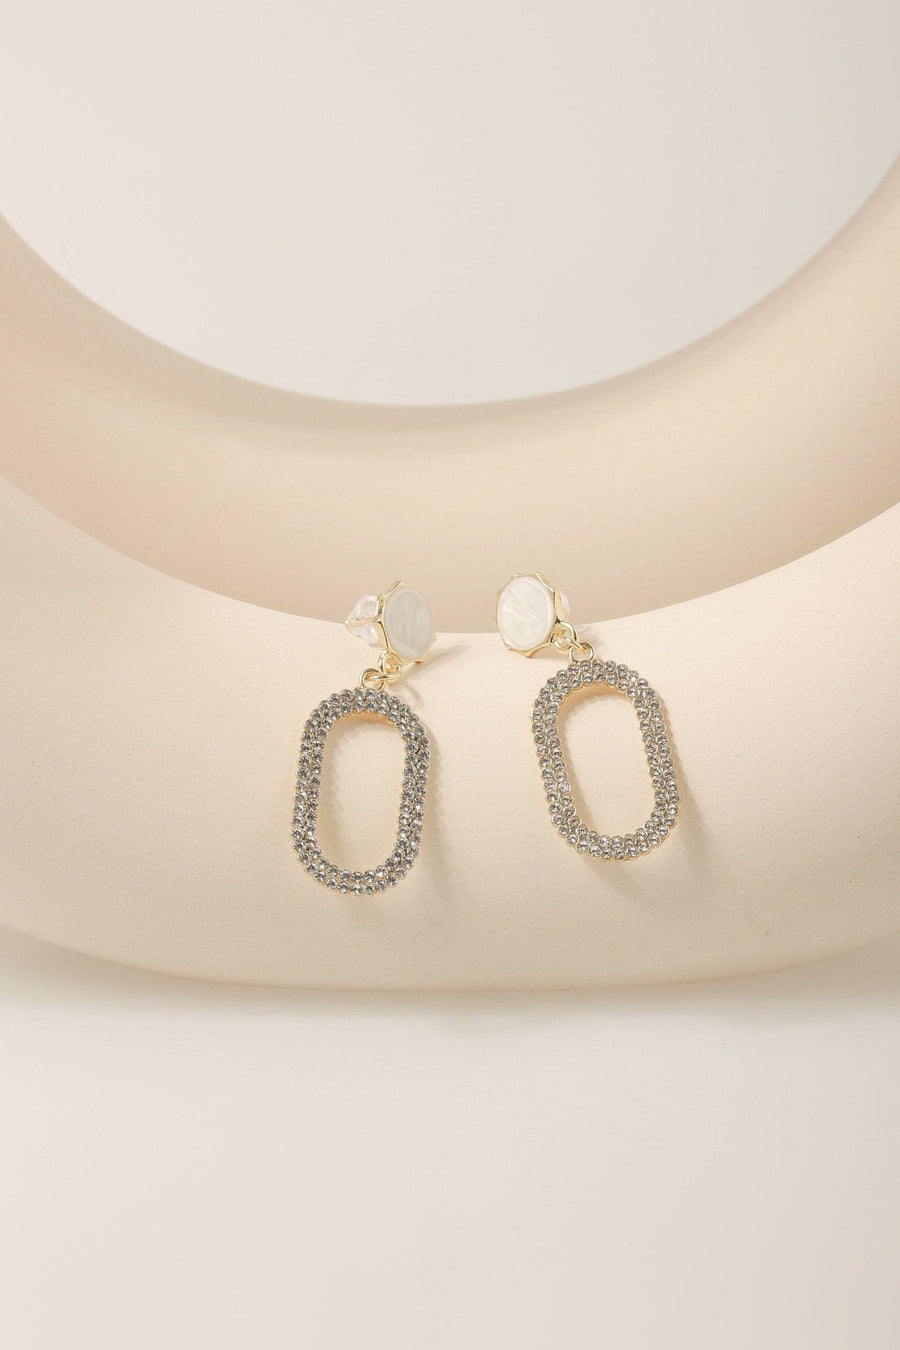 Zirconia Mother of Pearl Rectangle Dangle Earrings.